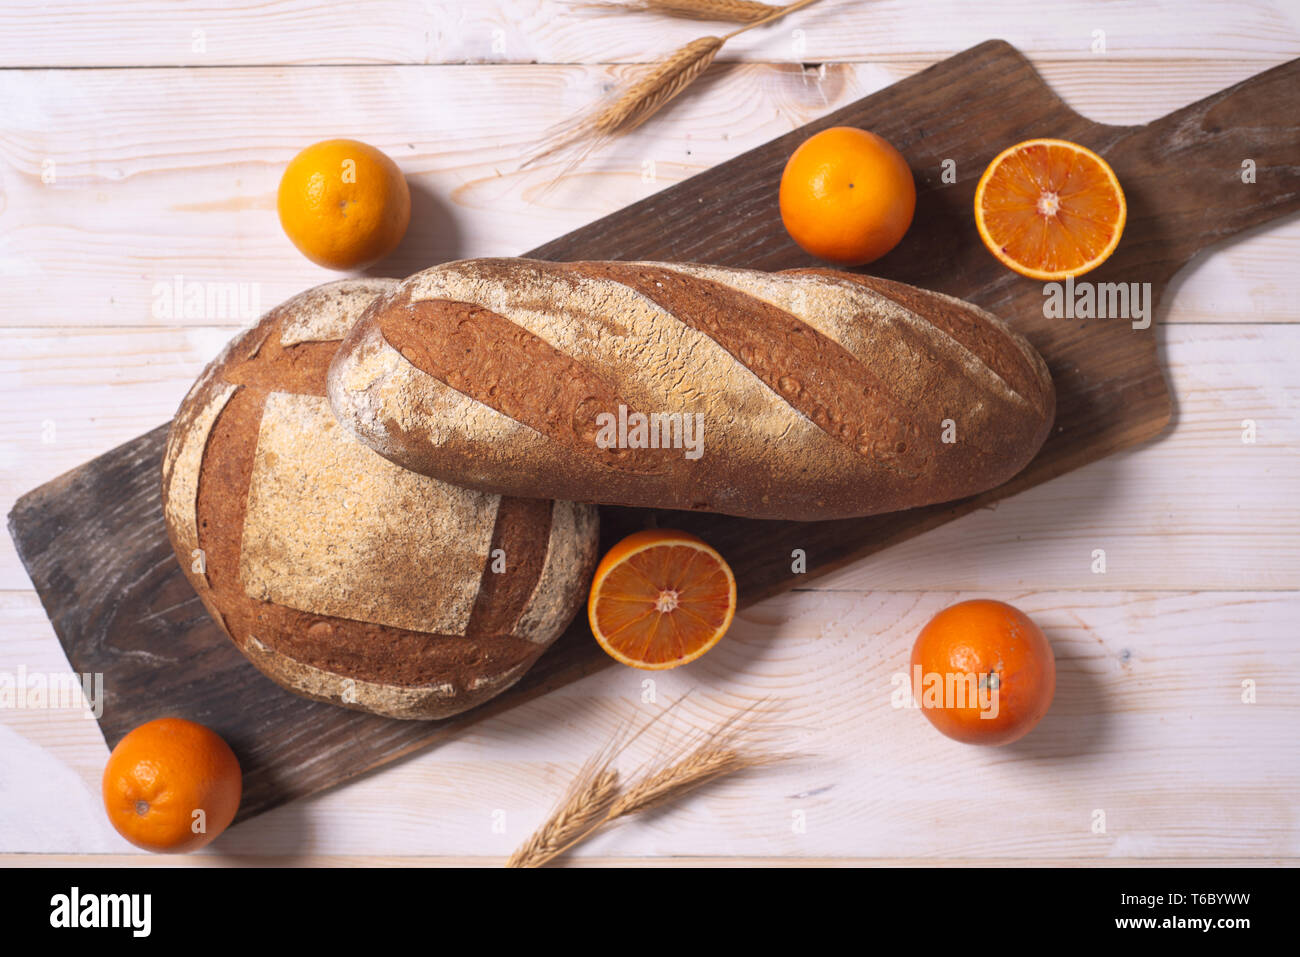 Neues Konzept für nachhaltige und nahrhaftes Brot von der italienischen Abteilung Forschung, mit Zitrusfrüchten Faser aus Verarbeitung von Apfelsinen Abfällen gewonnen wird, Stockfoto